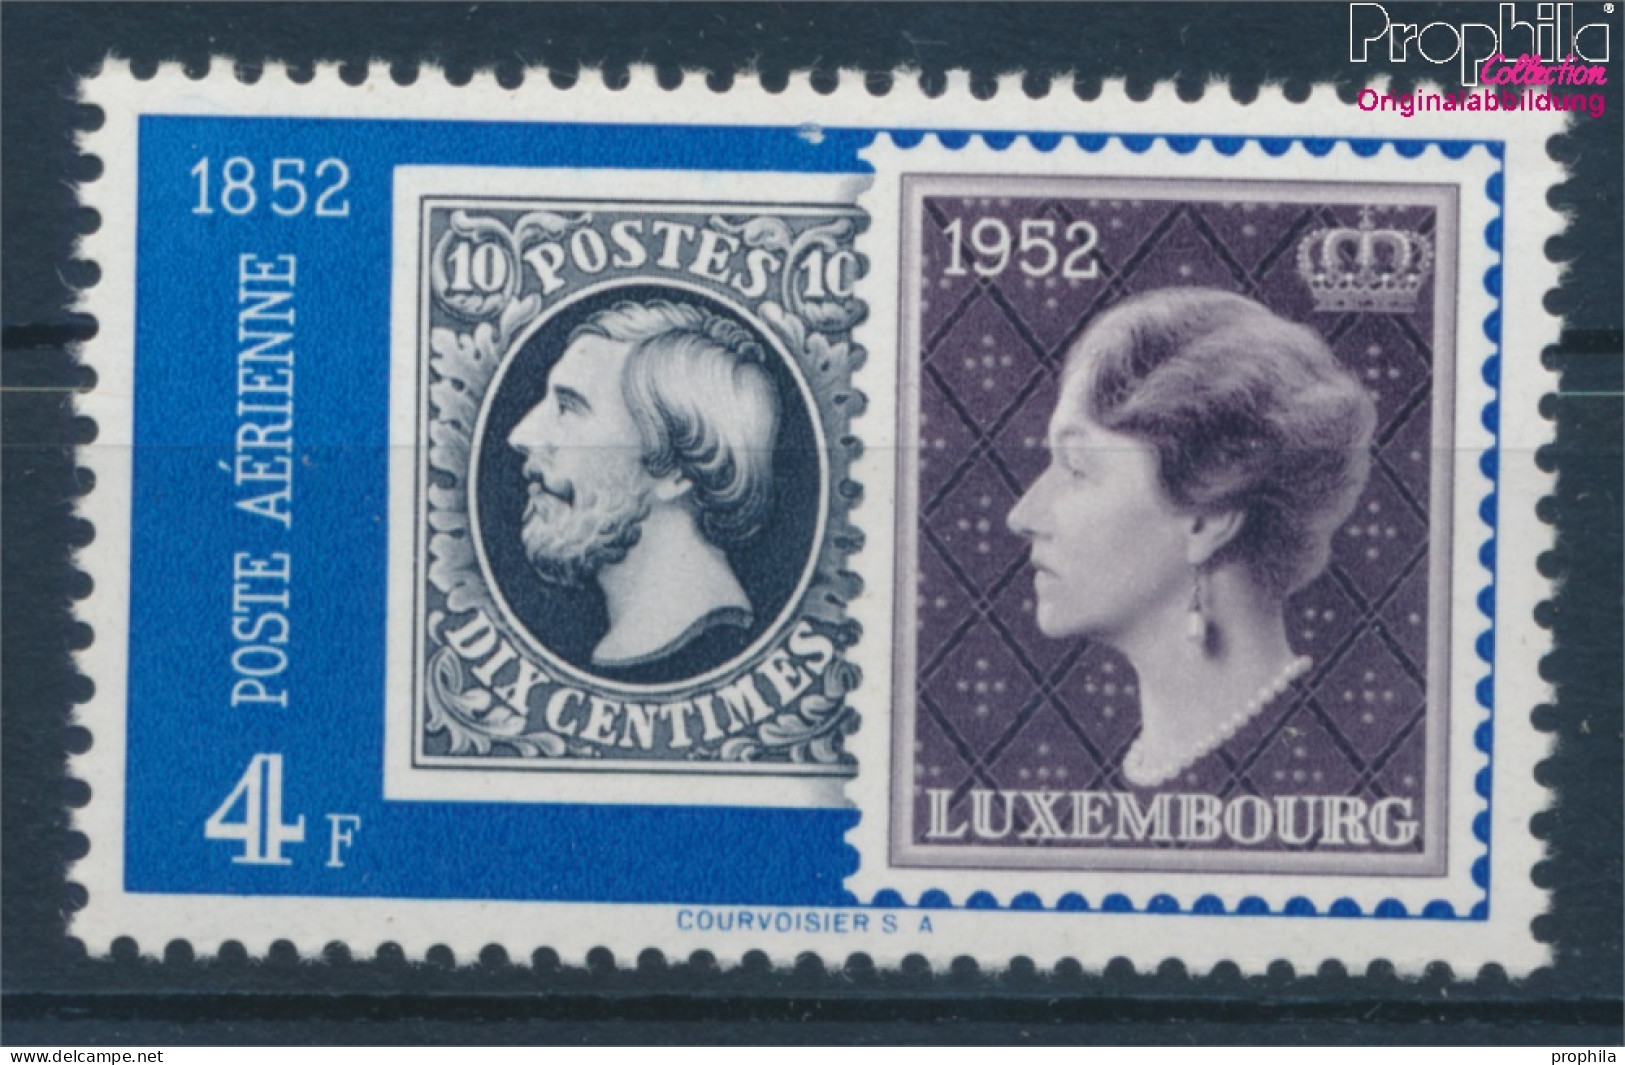 Luxemburg 492 Postfrisch 1952 Philatelie (10363181 - Neufs